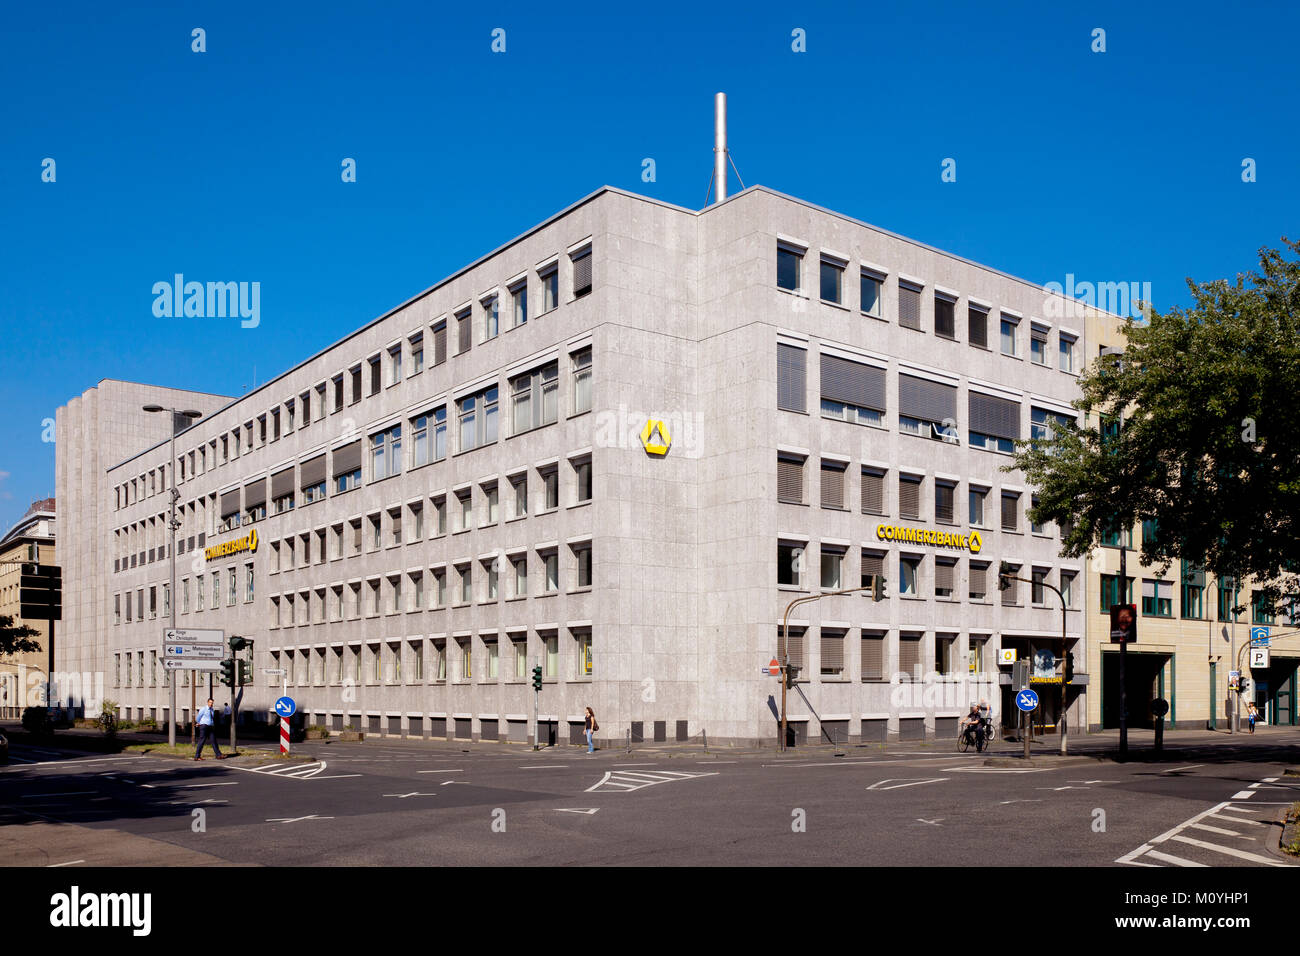 Alemania, Colonia, el Commerzbank, en el distrito financiero. Deutschland, Koeln, die im Bankenviertel Commerzbank. Foto de stock